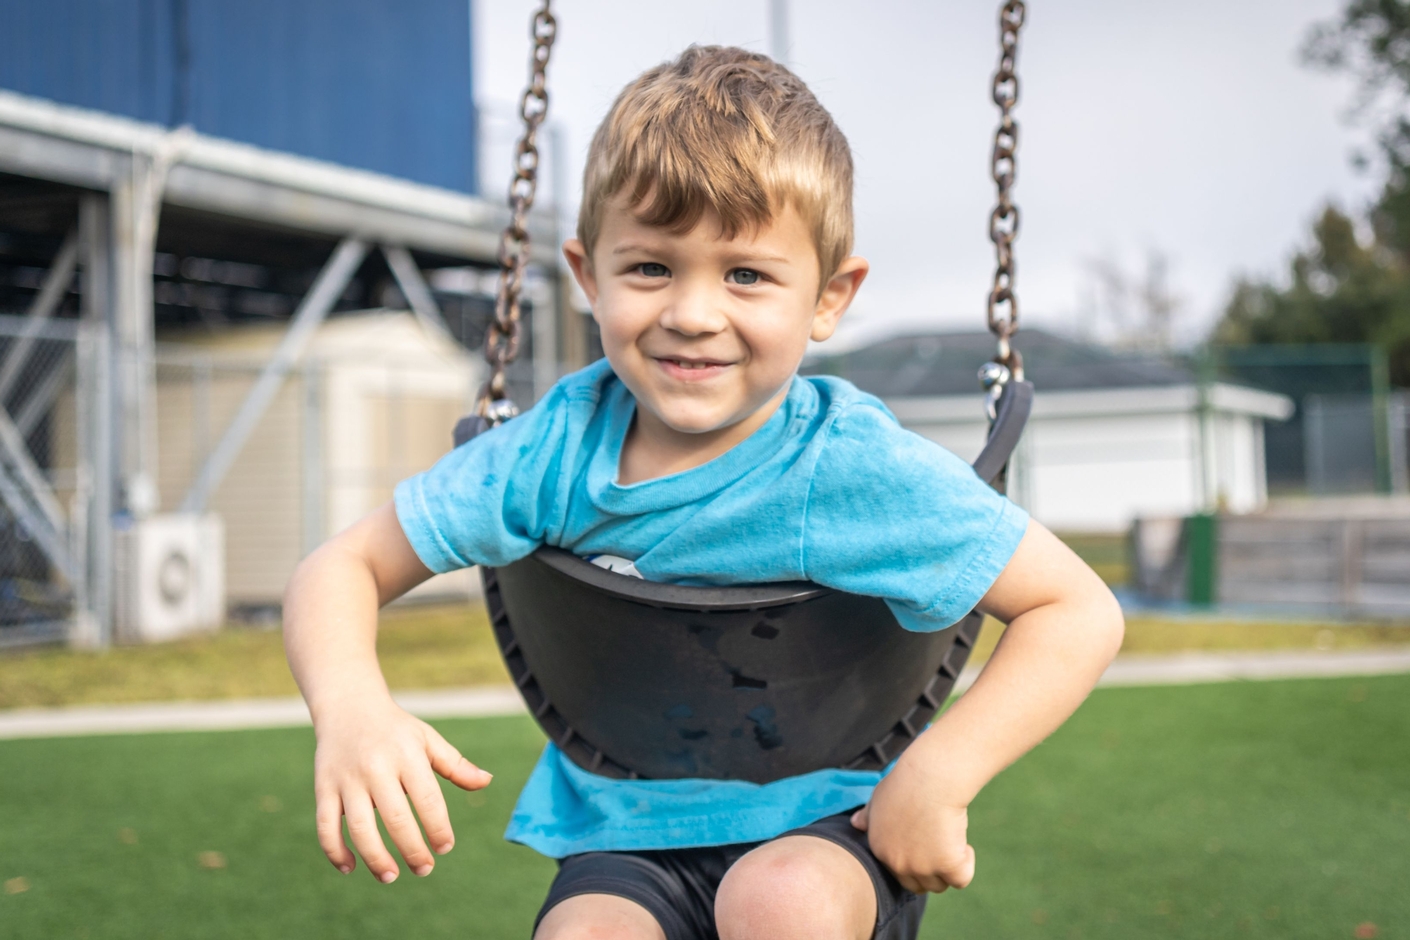 Preschool boy smiling on swing.